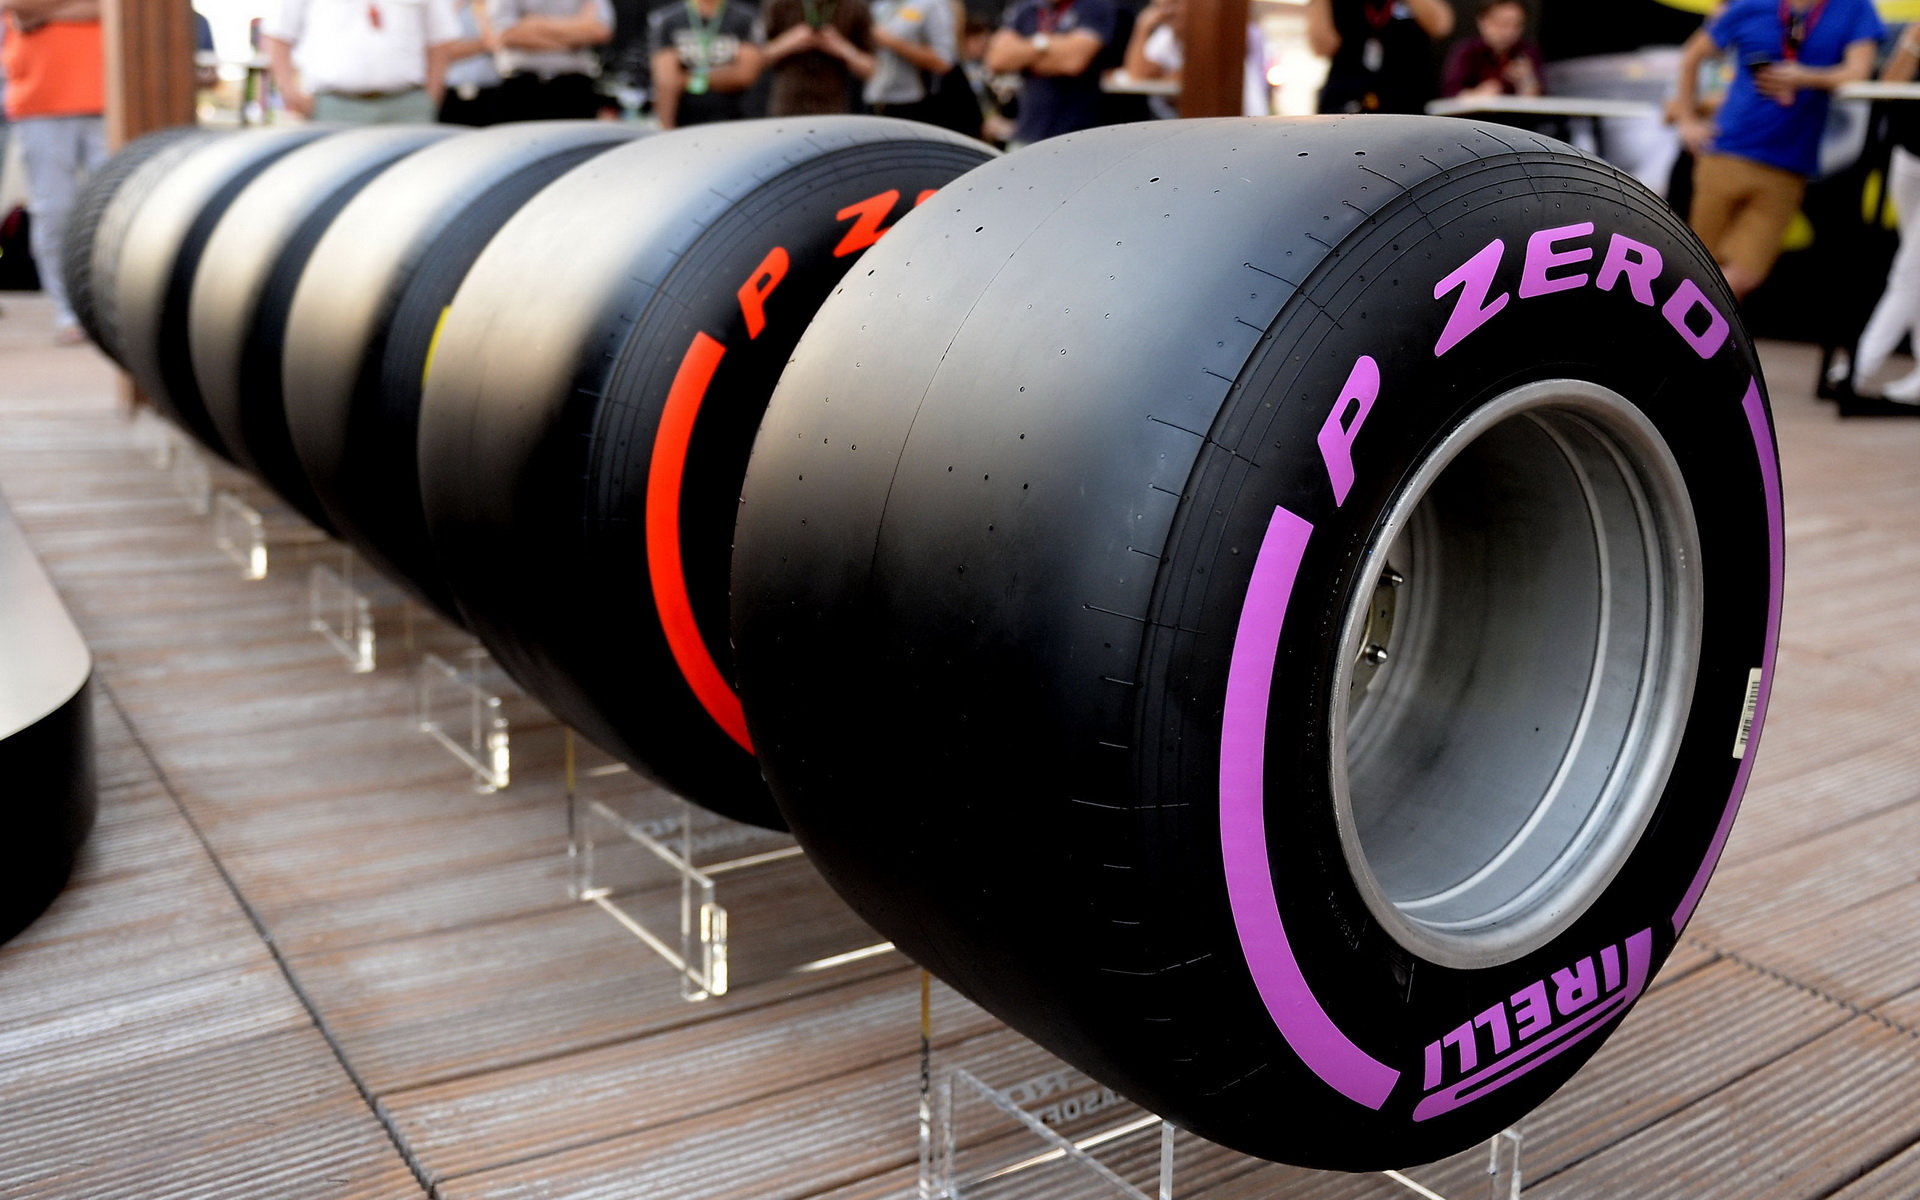 Prezentace nových pneumatik Pirelli pro sezónu 2017